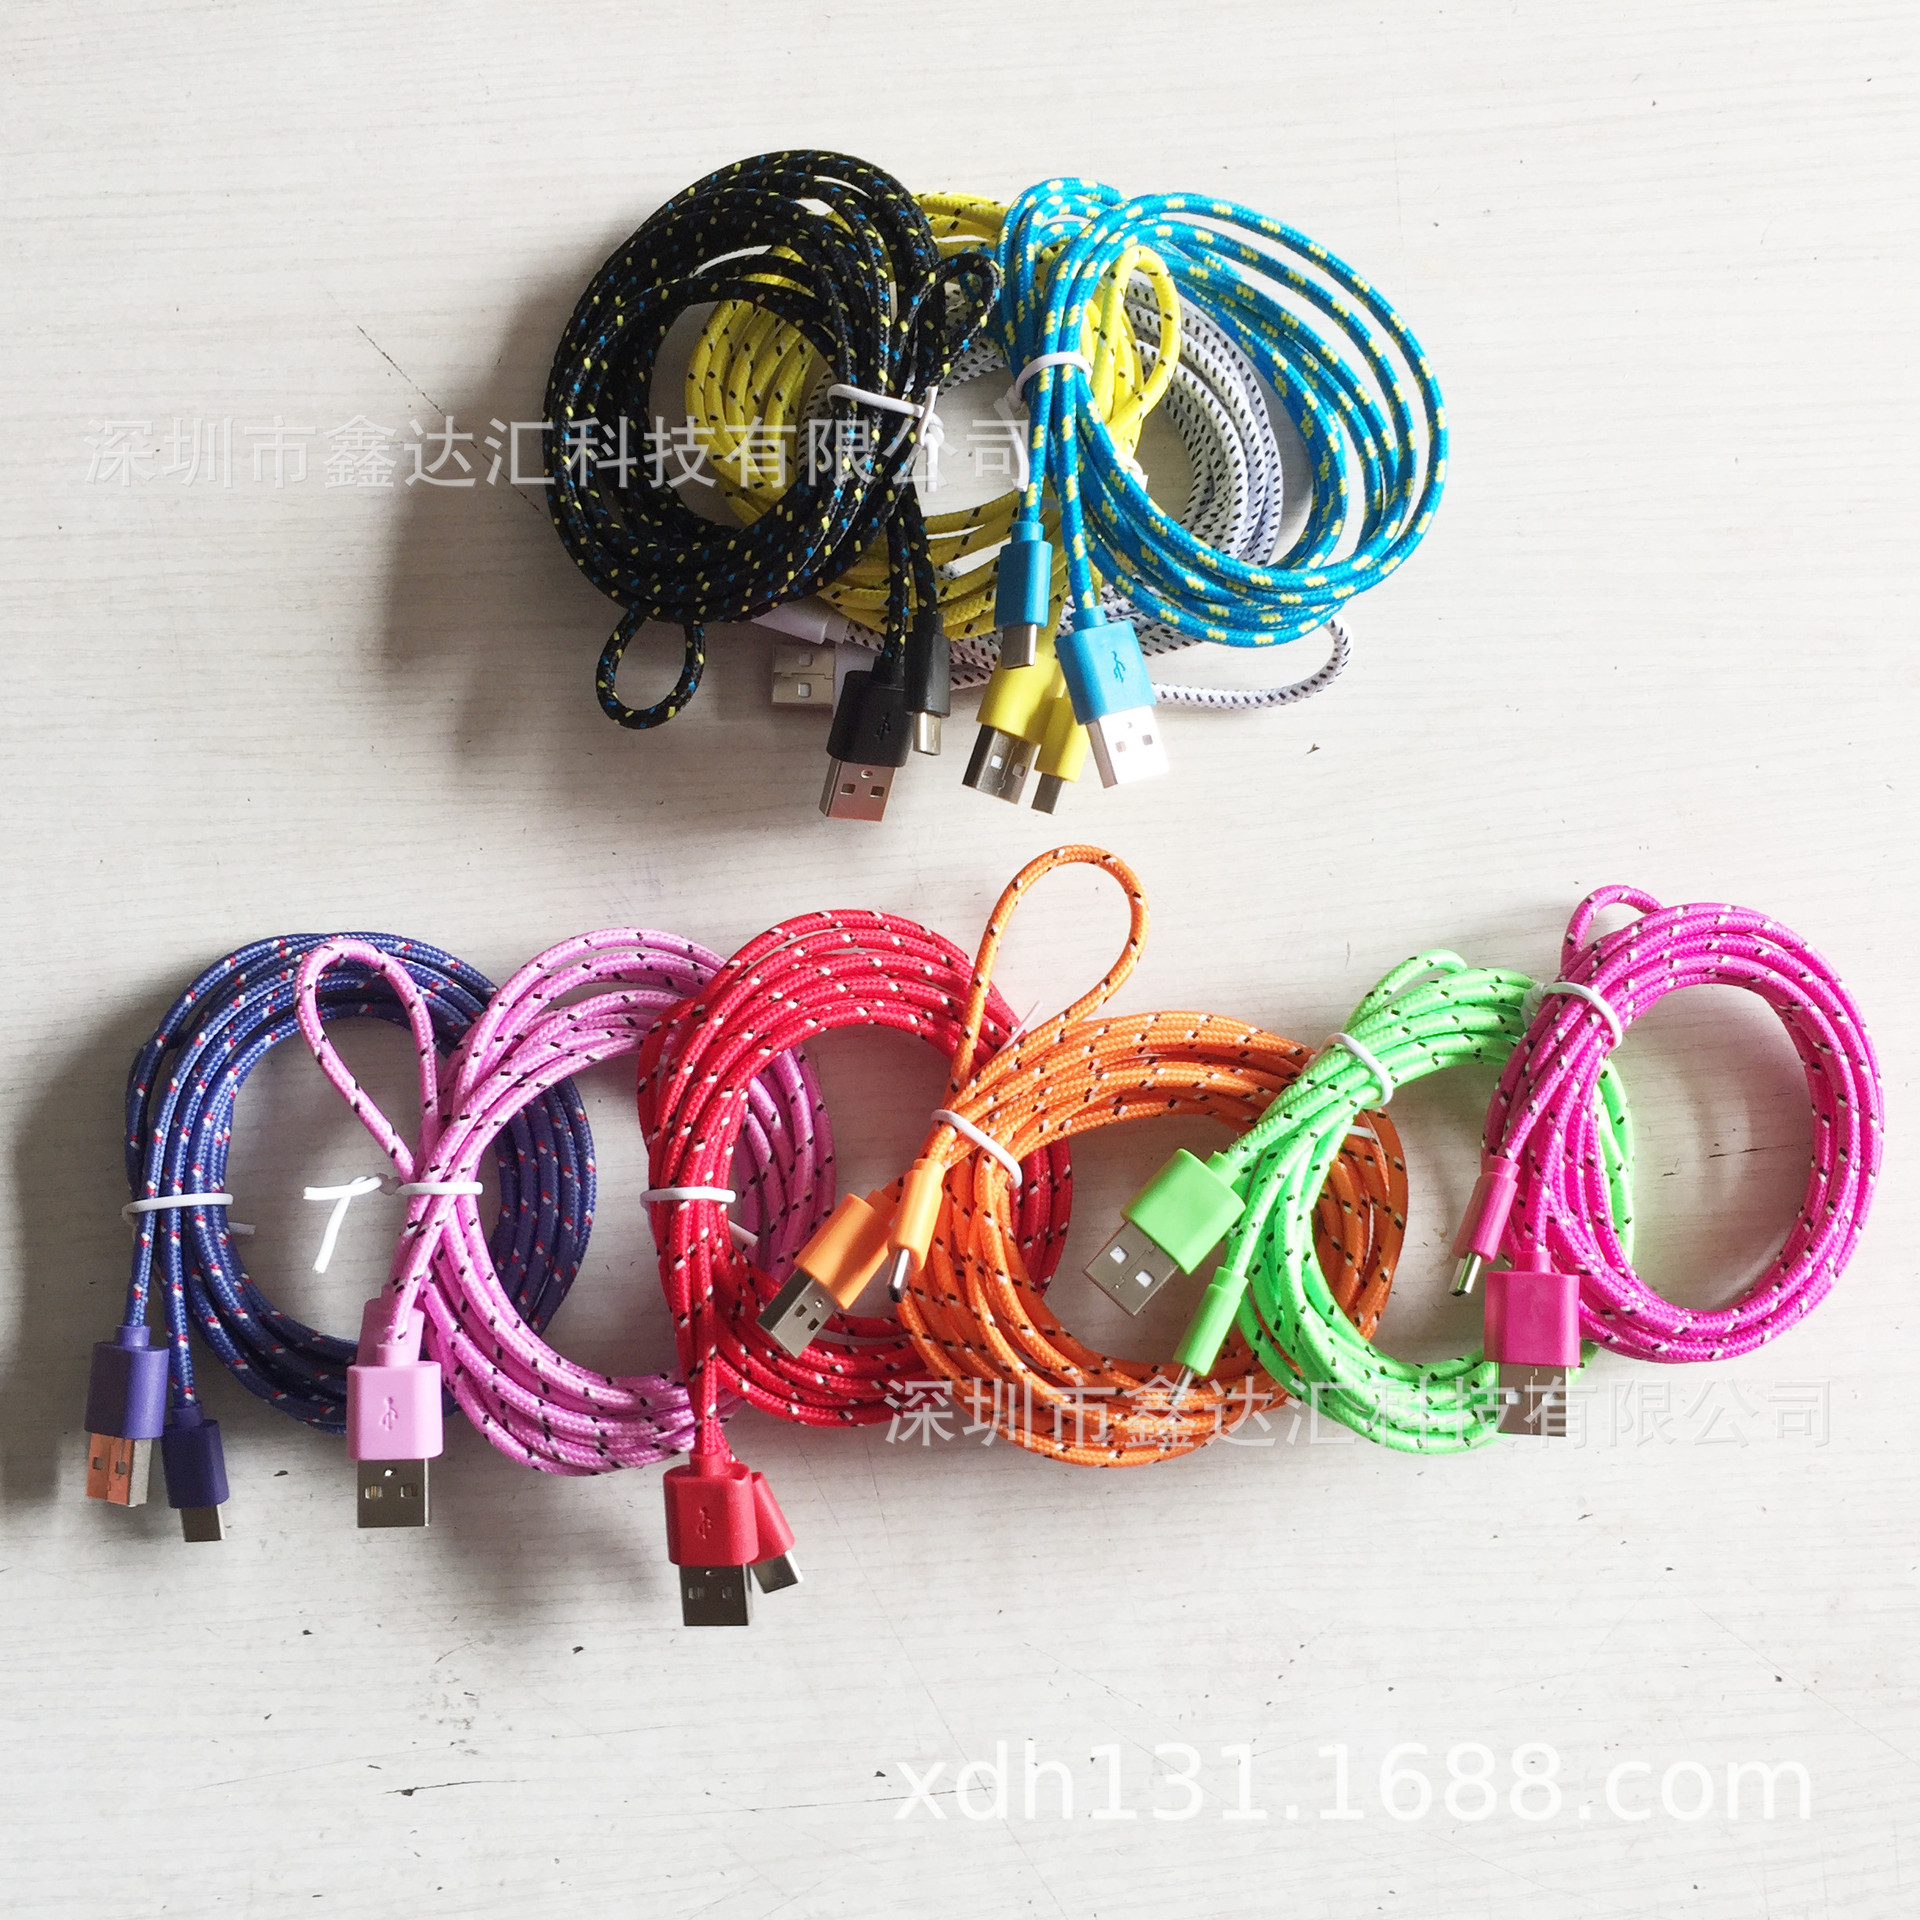 安卓迈克5PIN手机充电线 V8彩色花纹双色圆编织布麻绳数据线USB头